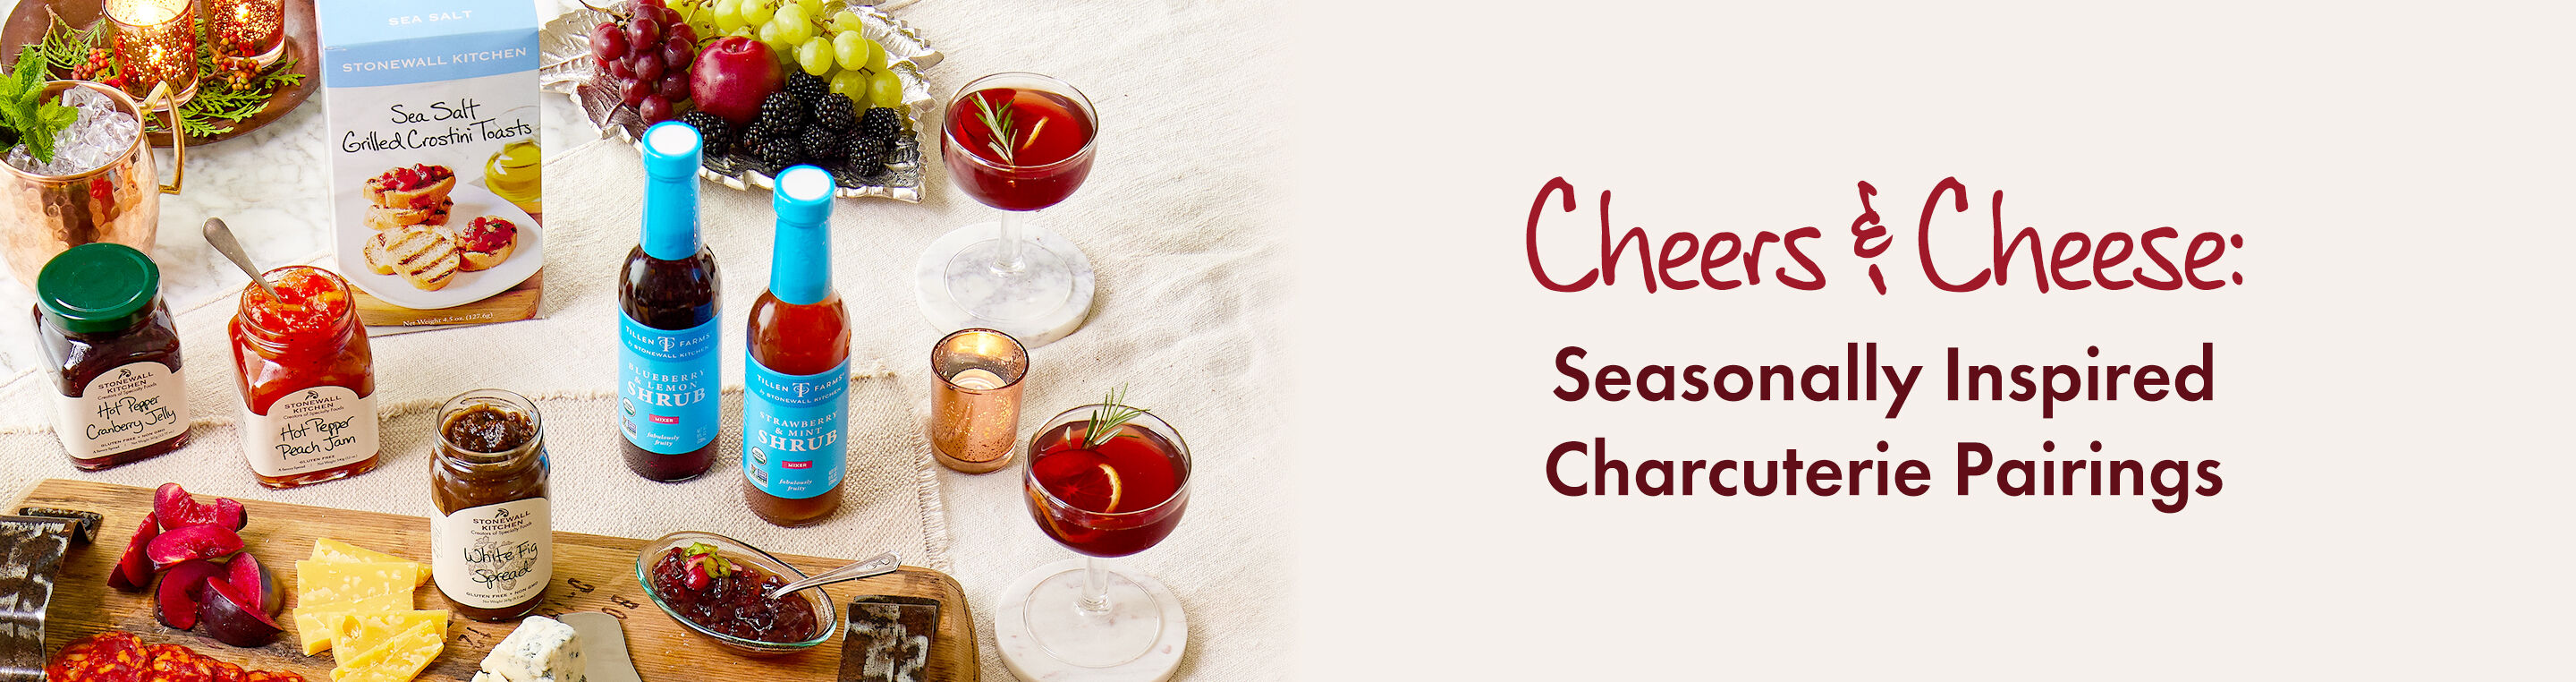 Cheers & Cheese: Seasonally Inspired Charcuterie Pairings